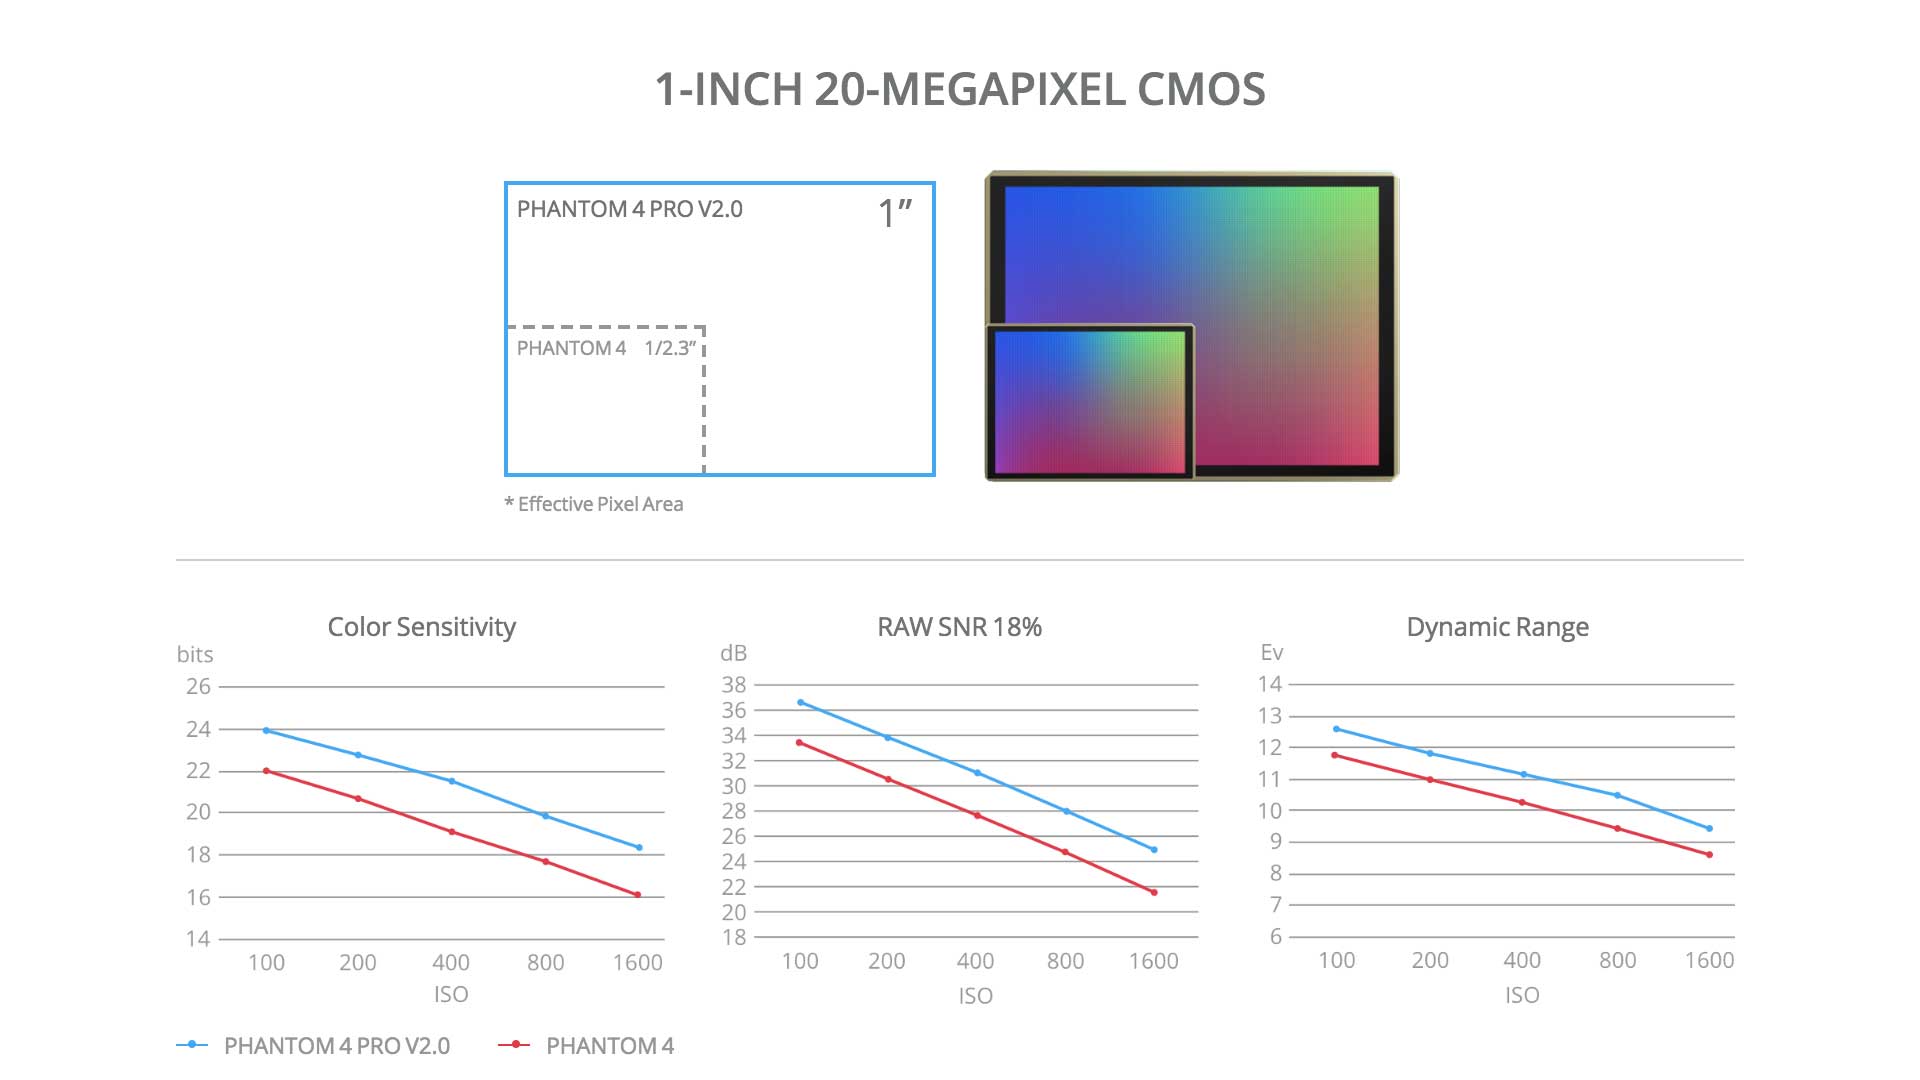 DJI Phantom 4 Pro V2.0 1-INCH 20-MEGAPIXEL CMOS